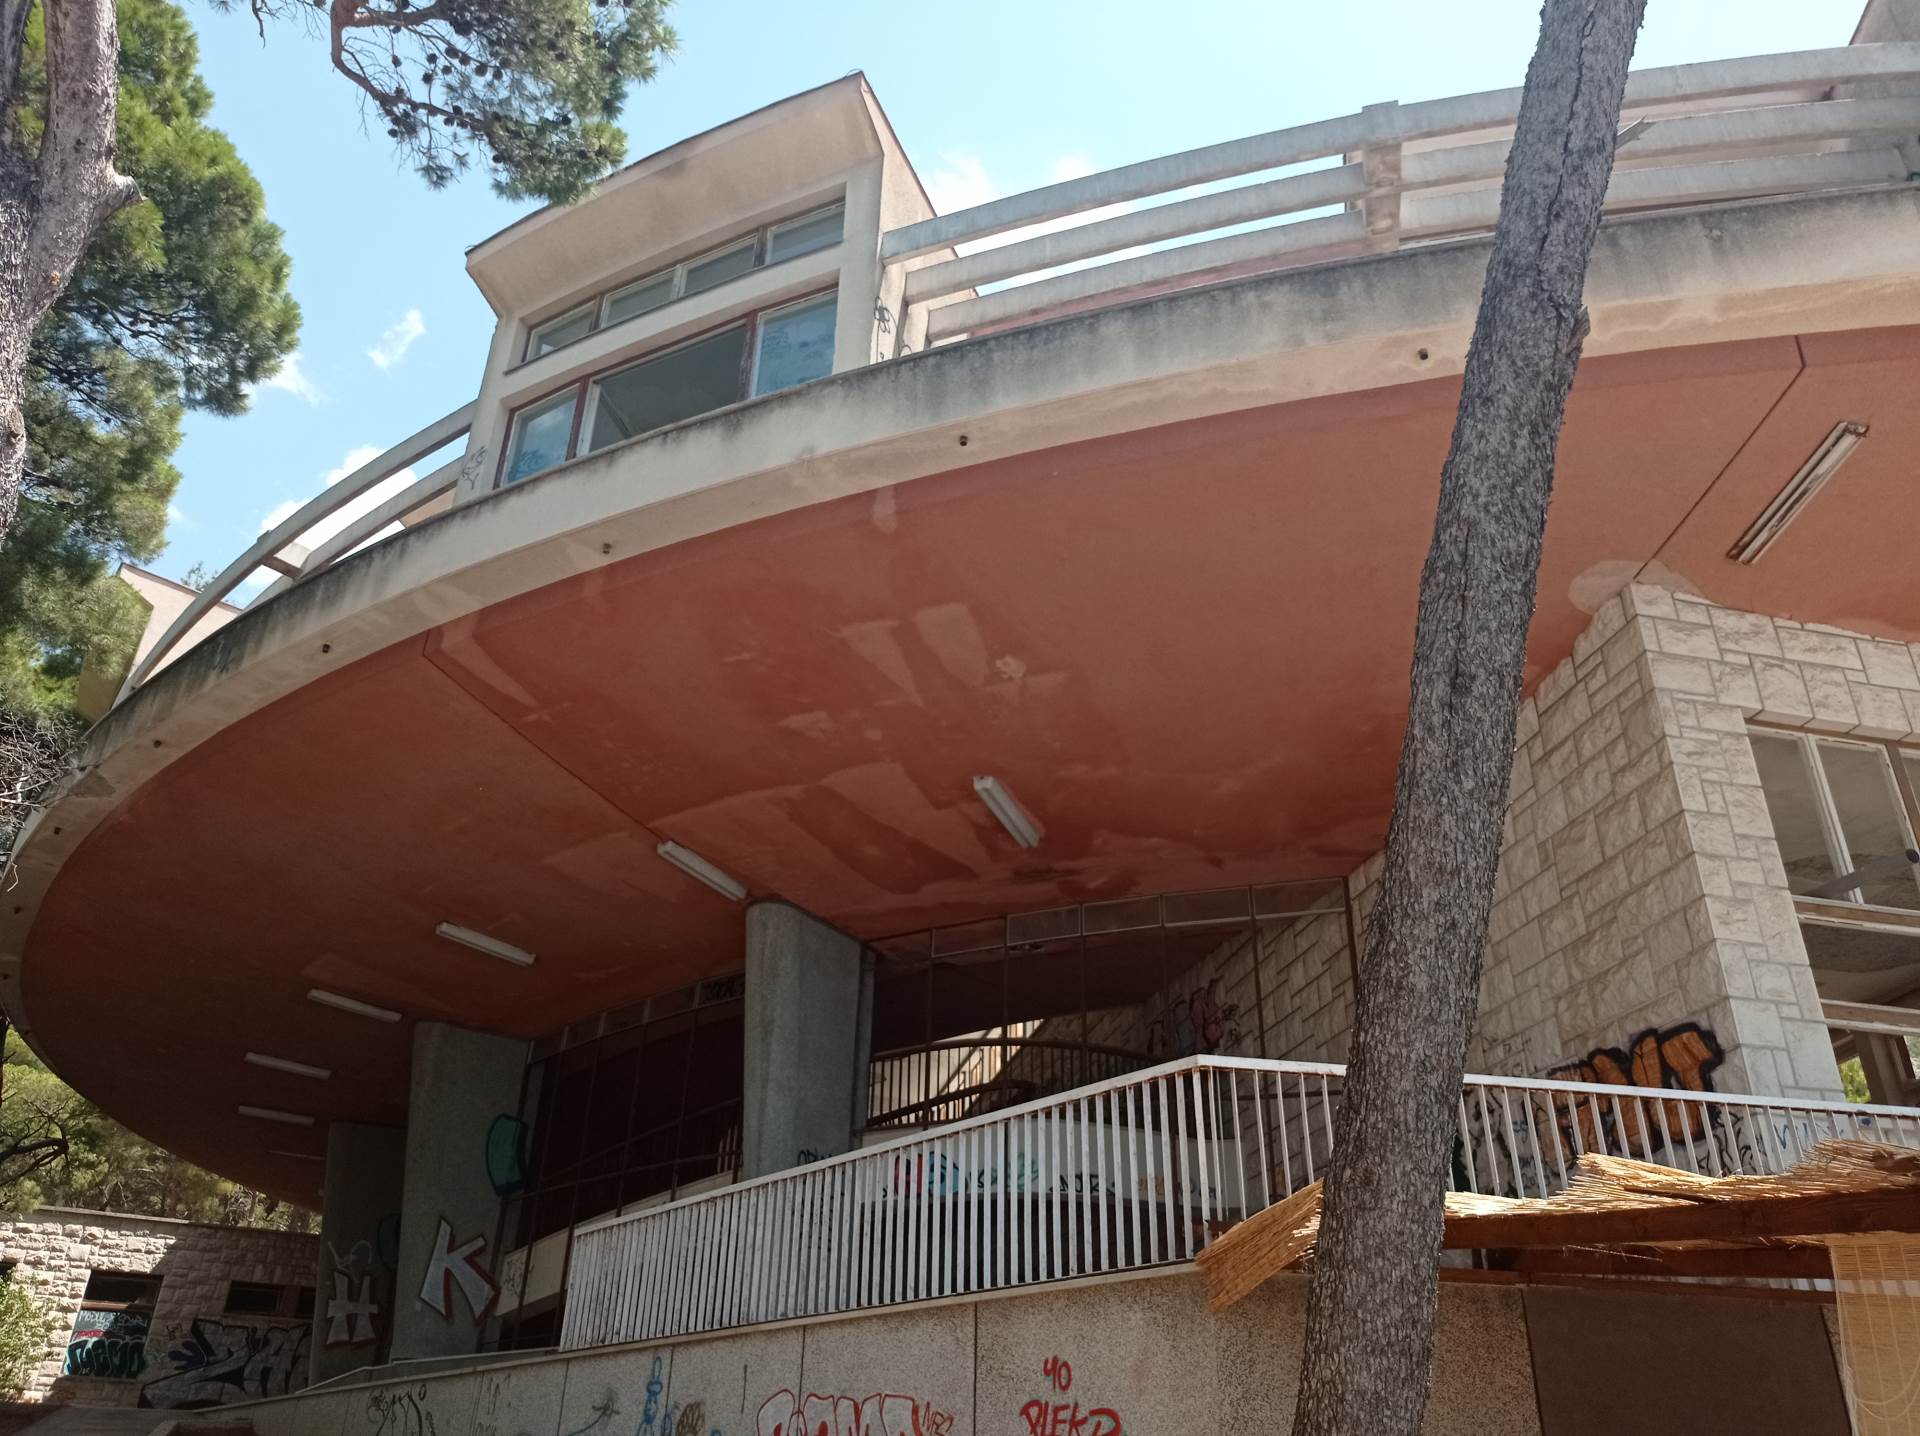  Krvavica  čudo moderne arhitekture: U Jugoslaviji lječilište, a u Hrvatskoj opasno po život! 